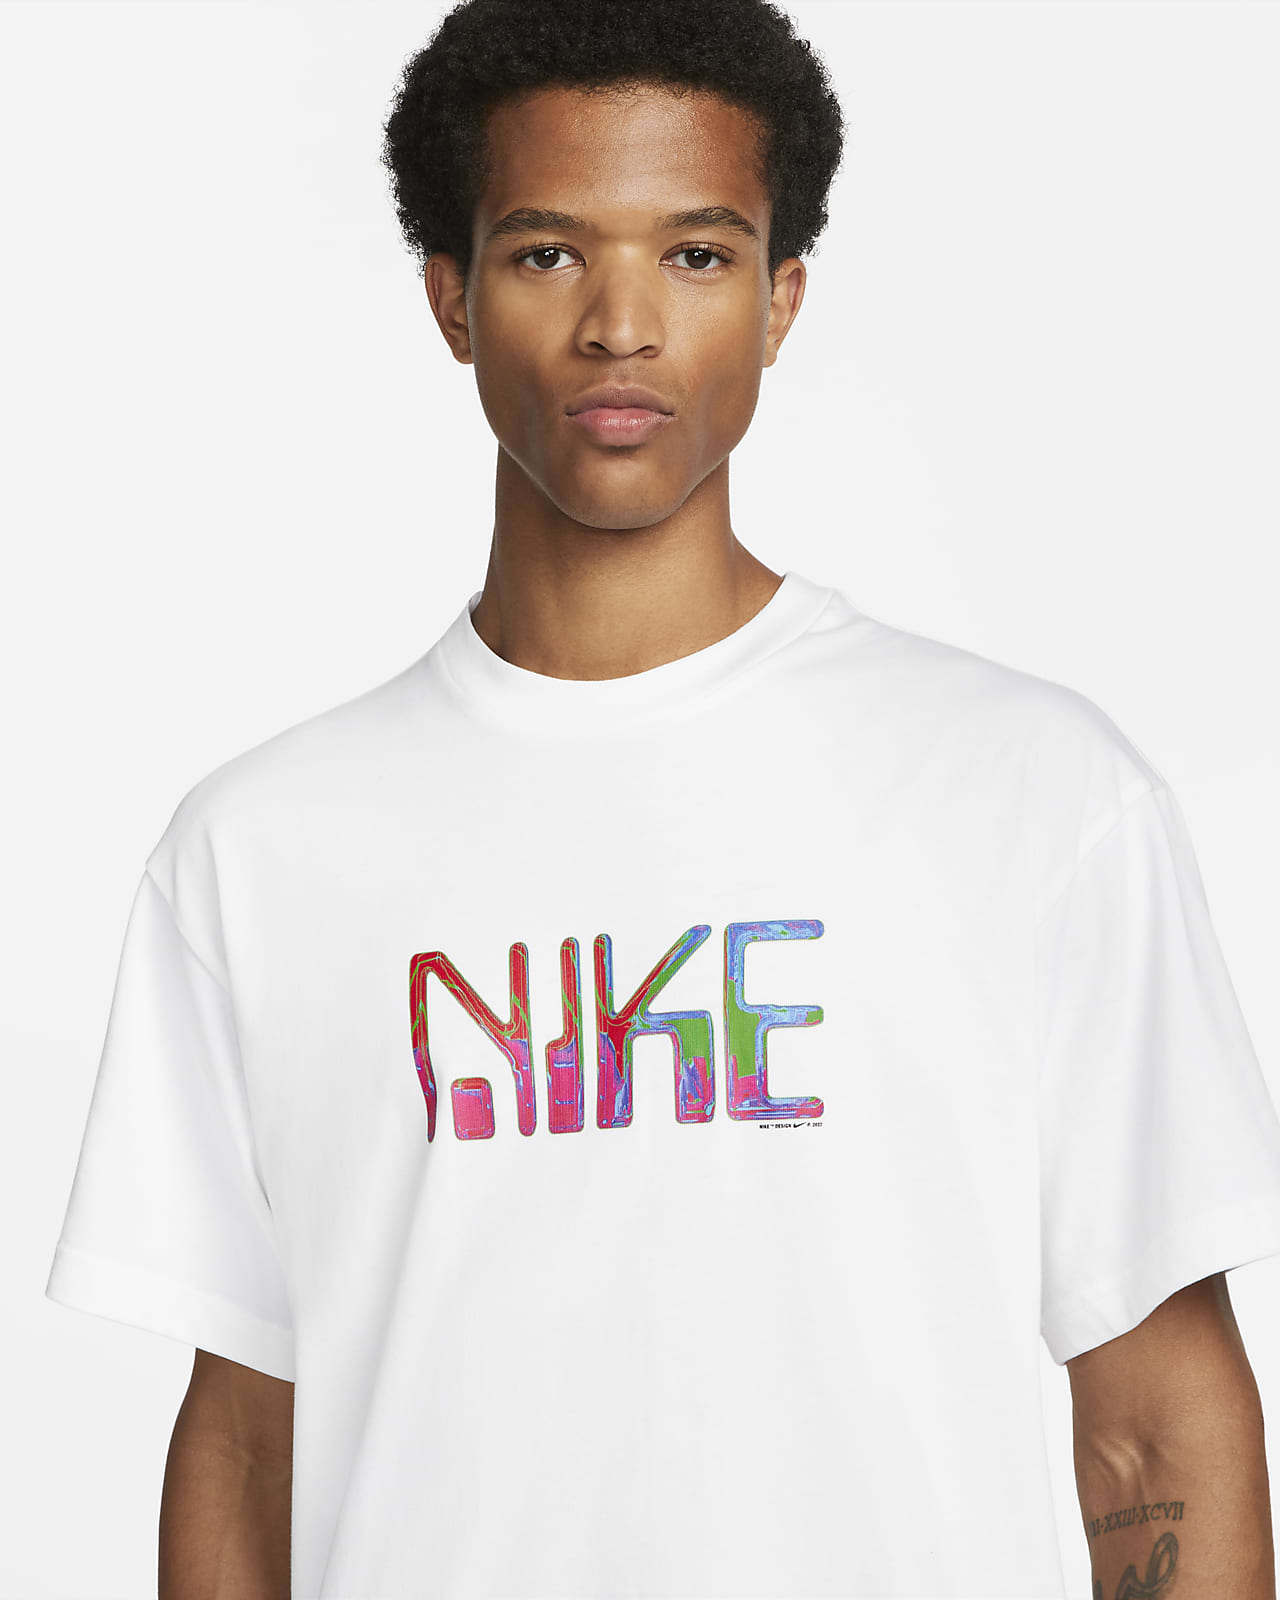 Nike T-Shirt. Nike BG